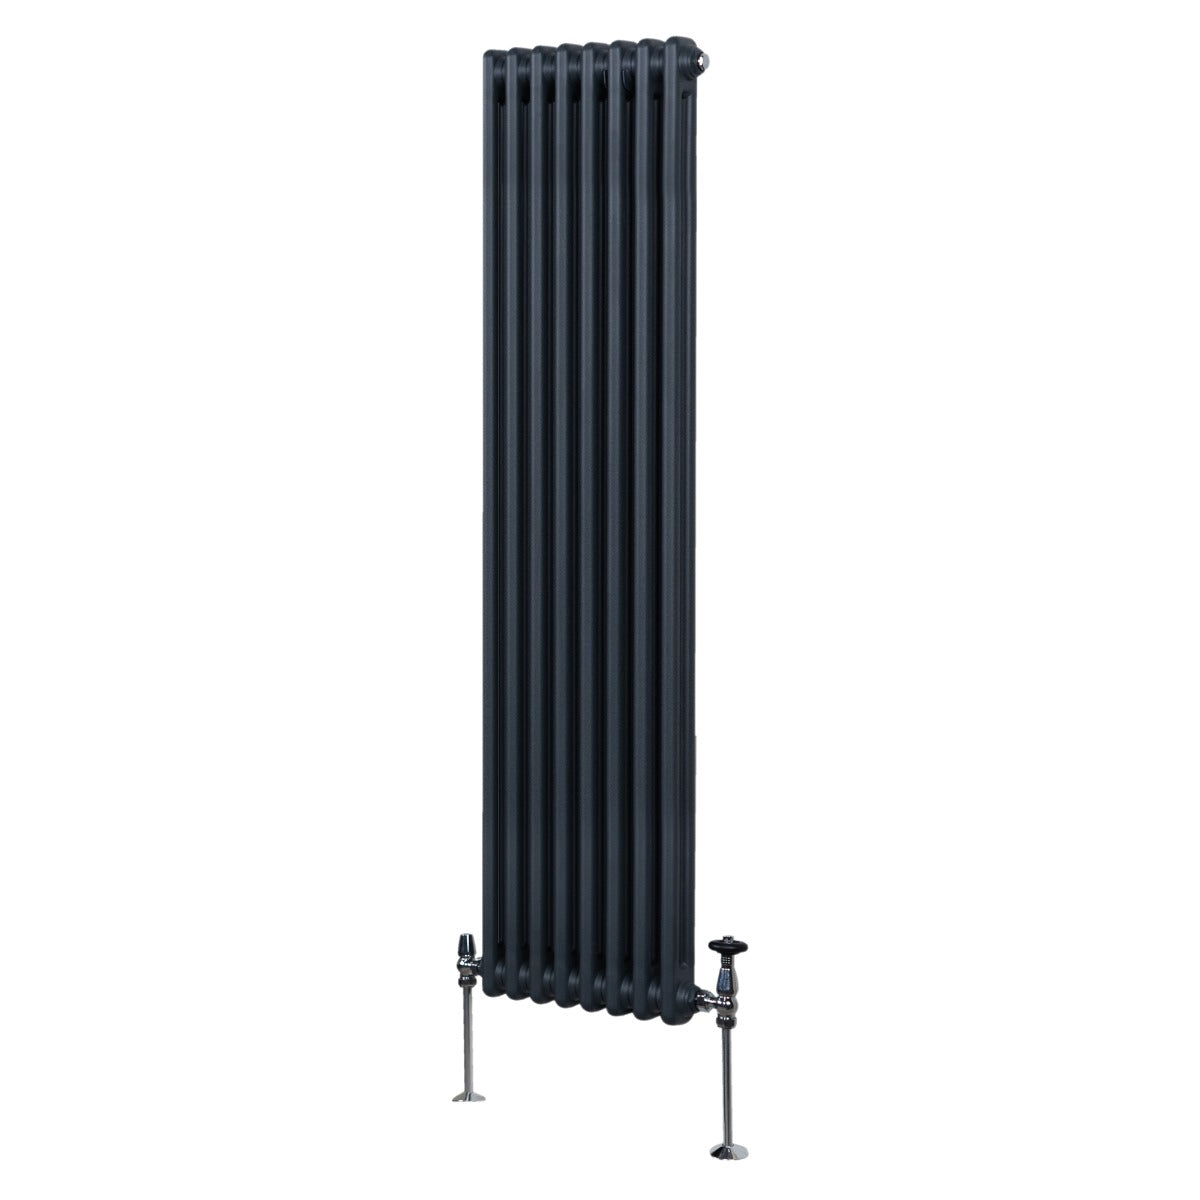 Termosifone Radiatore a 2 colonne per riscaldamento centralizzato verticale Grigio Antracite 180x38cm